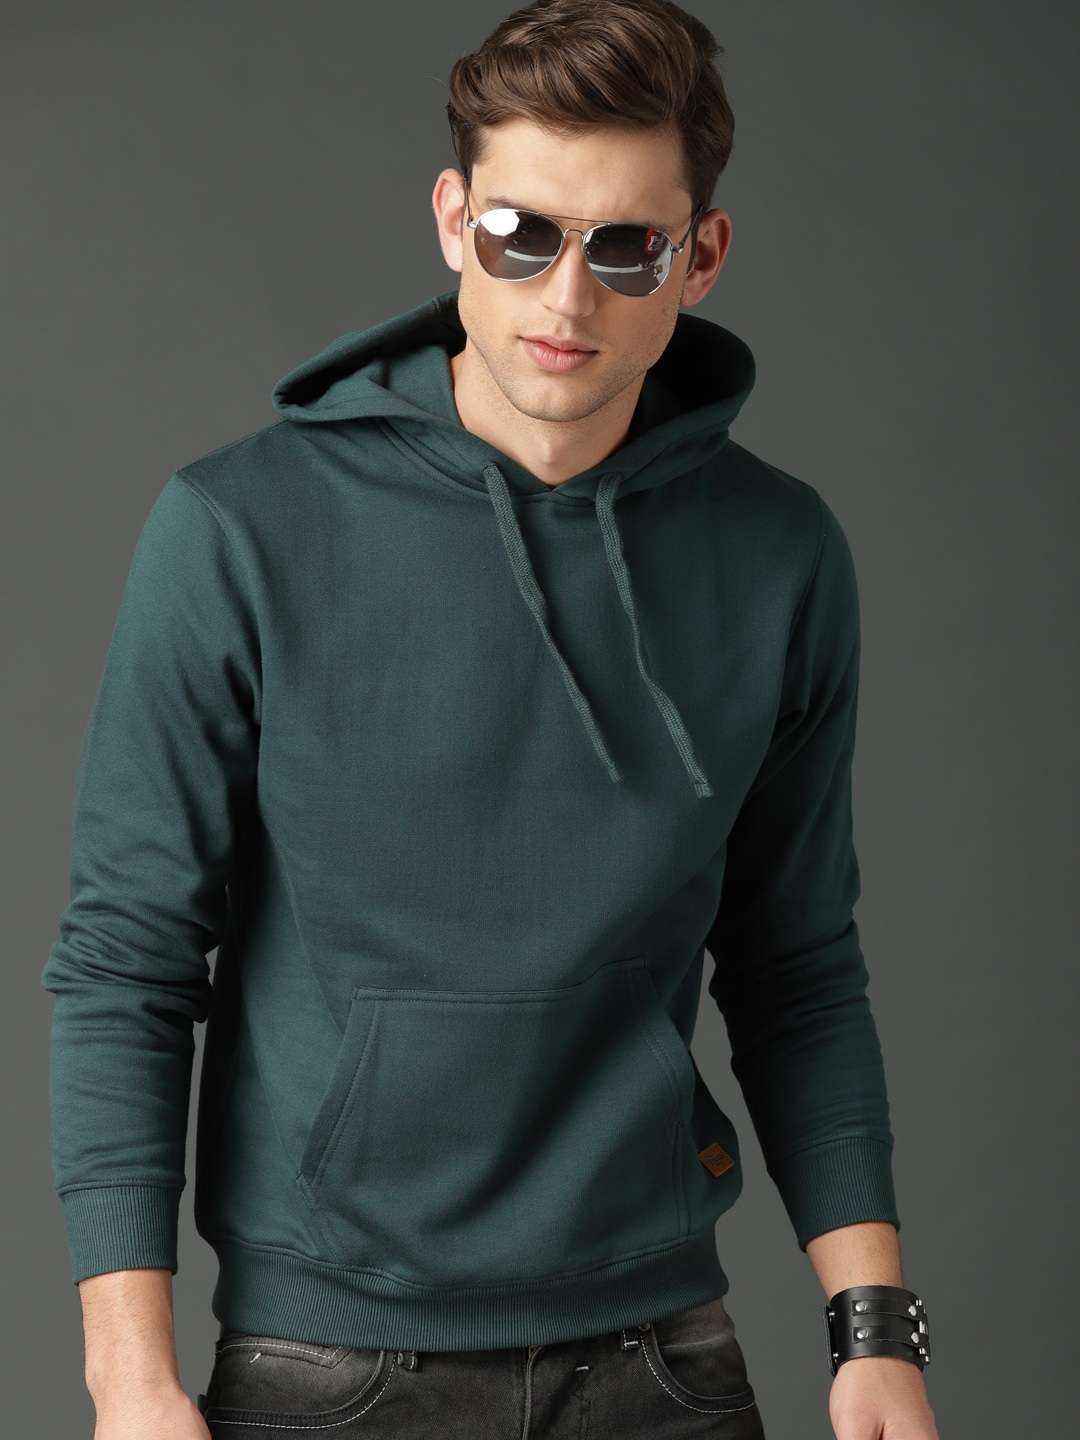 Buy Roadster Men Green Solid Hooded Sweatshirt - Sweatshirts for Men ...